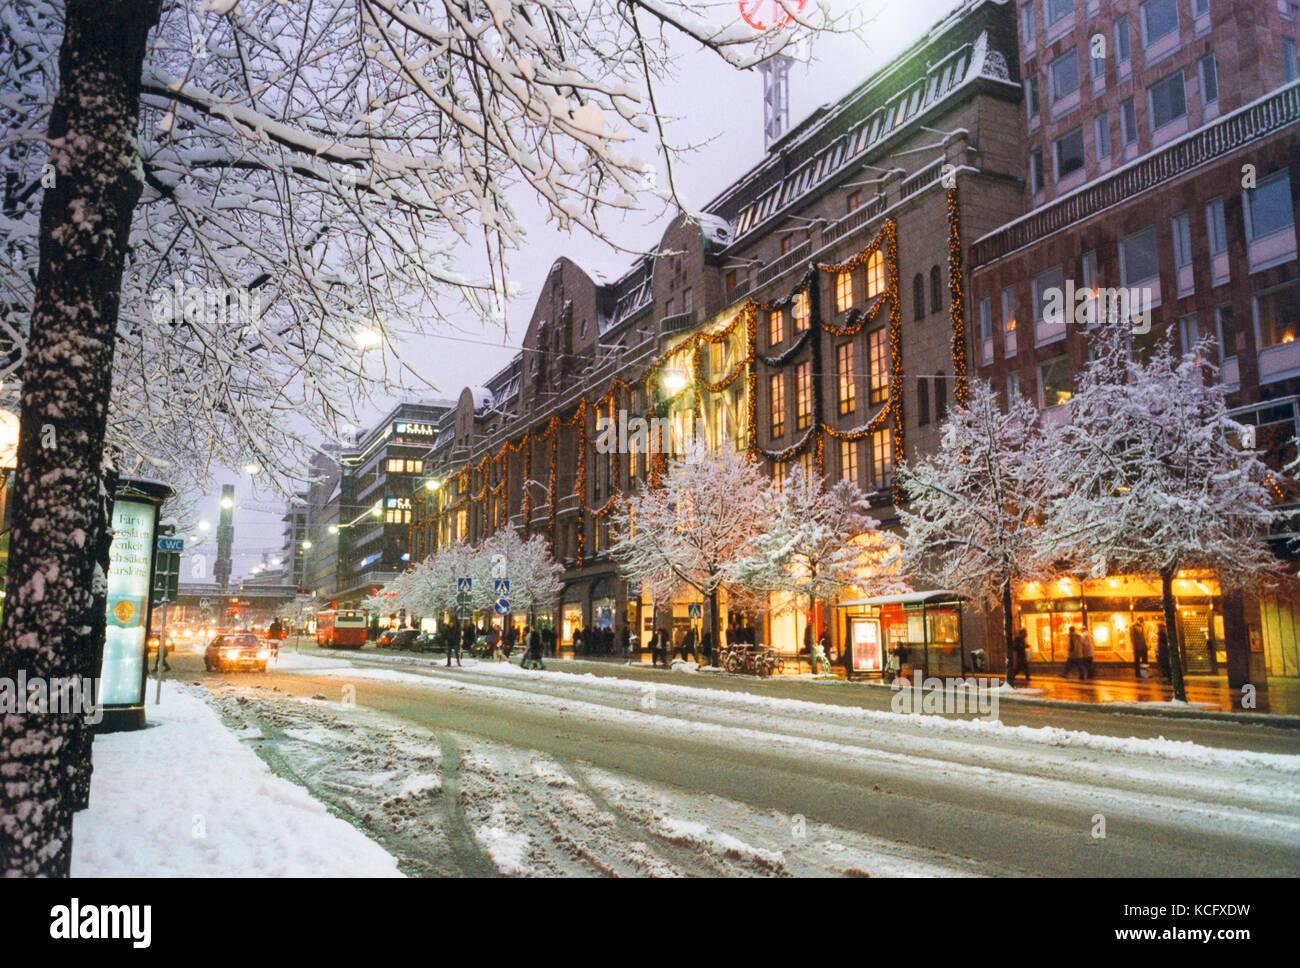 Kaufhaus nk in voller Weihnachten Dekor und Schnee 2009 Stockfoto